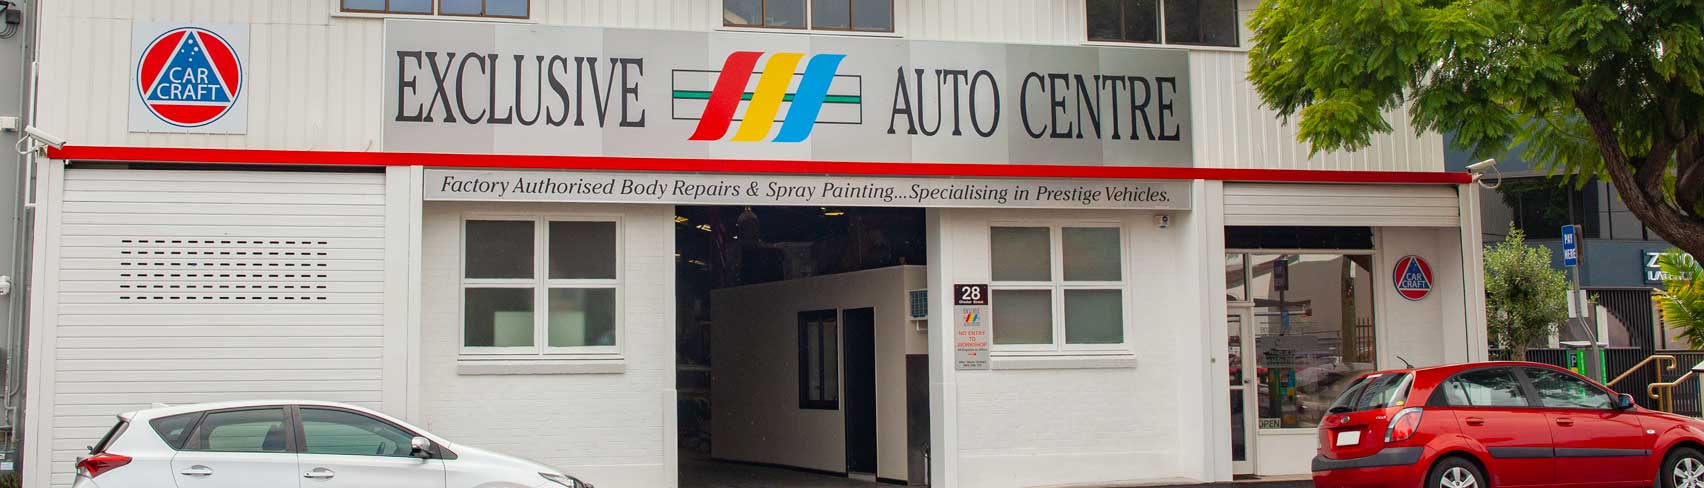 exlcusive auto centre workshop